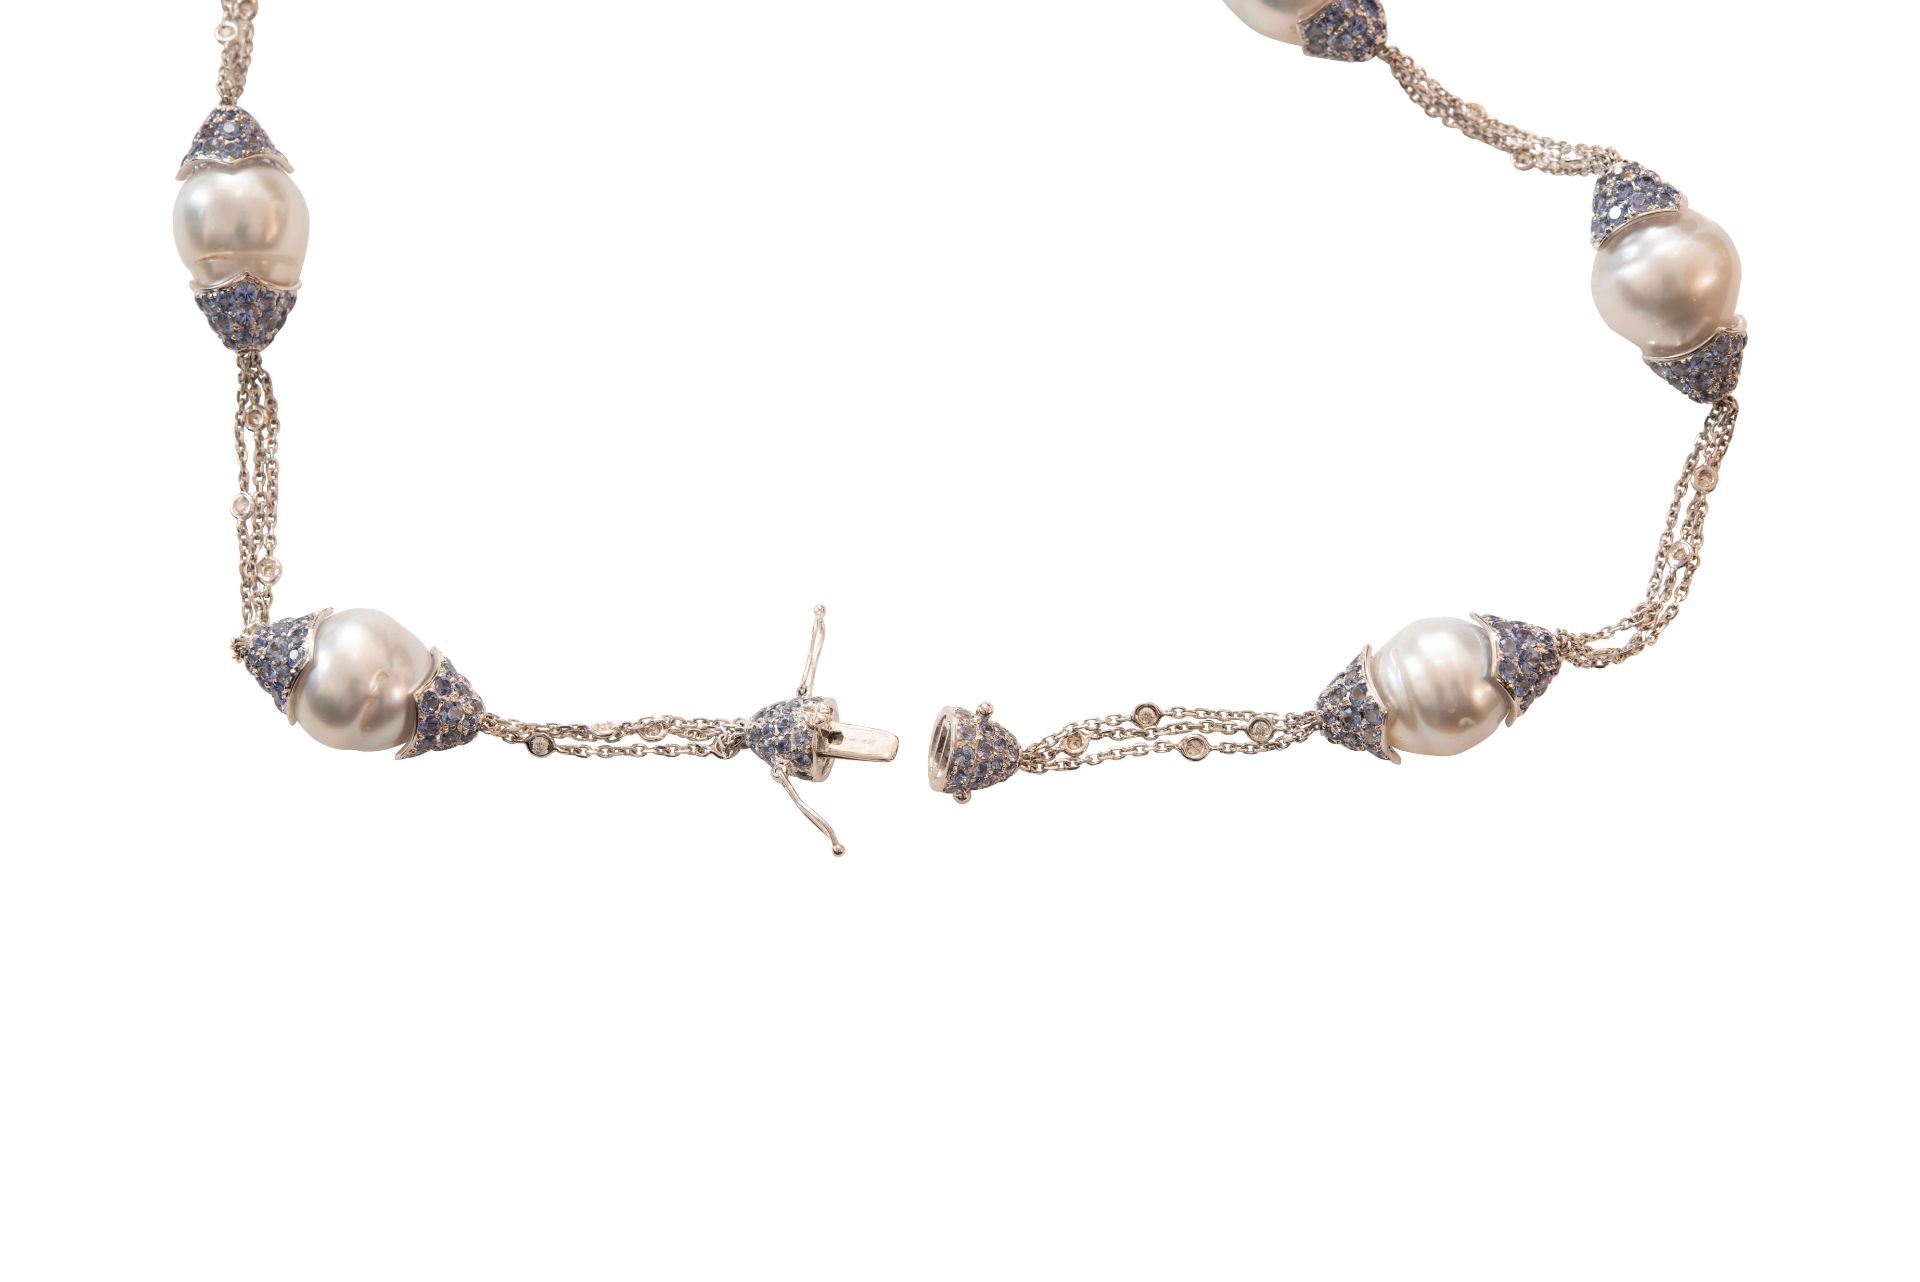 Collier WG mit Brillanten, Saphire, und Perlen|Necklace with Diamonds, Sapphires, & Pearls - Image 4 of 6